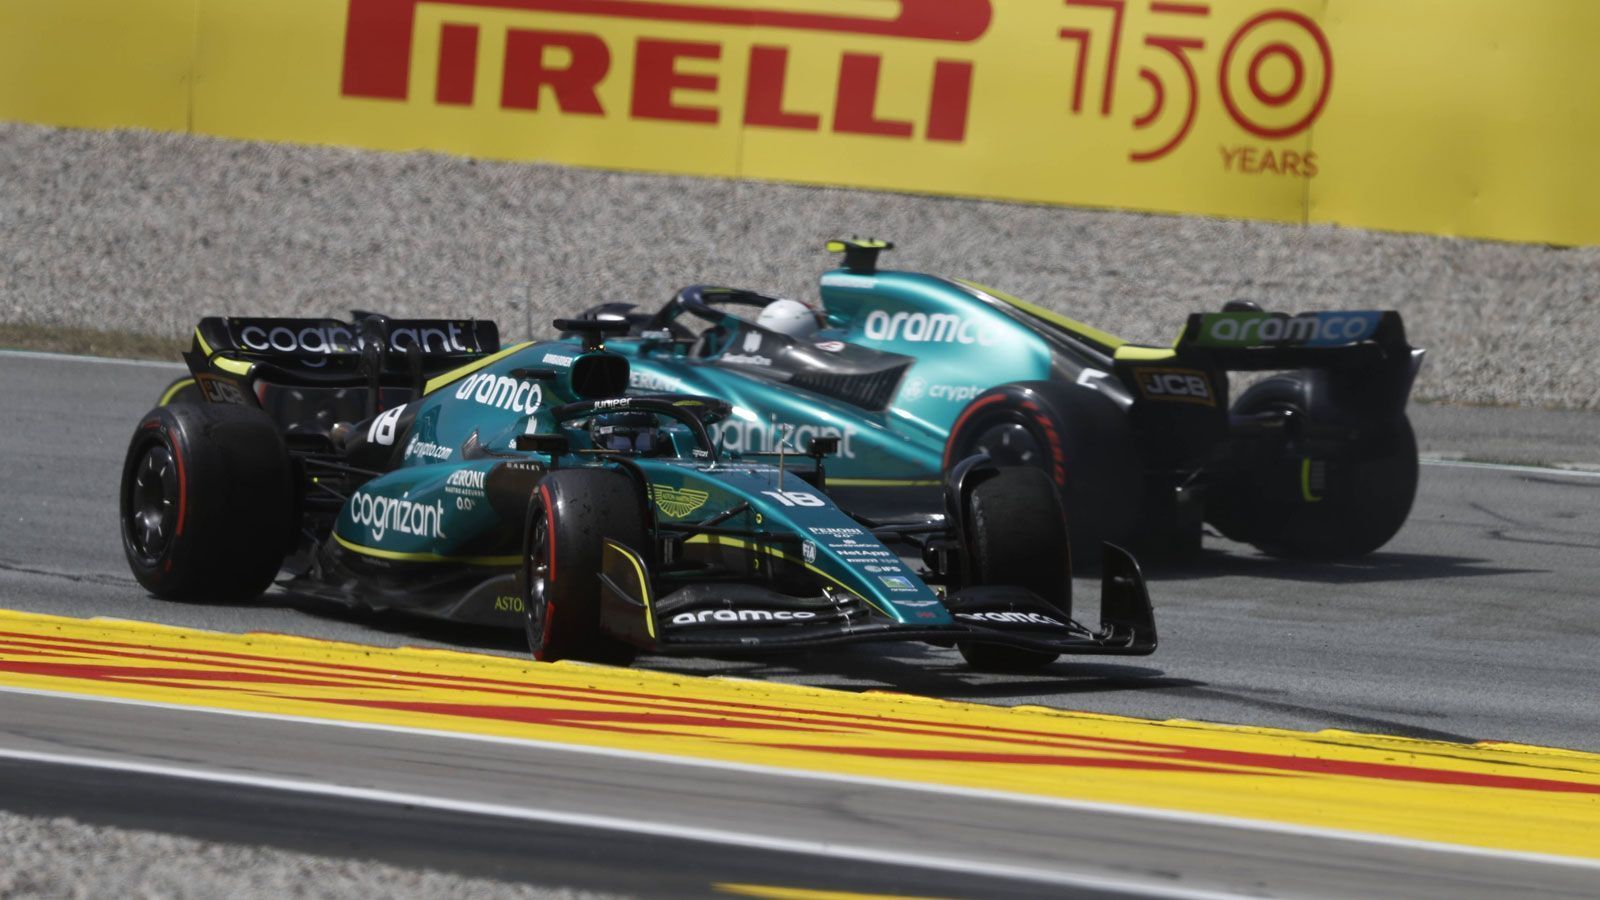 
                <strong>Verlierer: Aston Martin</strong><br>
                Für Aston Martin beginnt der Besuch in Spanien mit Plagiatsvorwürfen. Die äußeren Züge des erneuerten Boliden sollen von den Red Bull abgekupfert sein, lautet der Vorwurf. Es gibt zumindest Indizien, aber noch keine Beweise. Leistungsmäßig ähneln sich die Fahrzeuge auf jeden Fall überhaupt nicht. Für Sebastian Vettel und Lance Stroll endet das Qualifying nach der ersten Session, im Rennen sind dann auch keine Punkte zu machen. Aston Martin hat vor allem mit der Hitze zu kämpfen. Bleibt gerade für Vettel auf seiner möglichen Abschiedstour zu hoffen, dass sein Team zumindest in die richtige Richtung entwickelt.
              